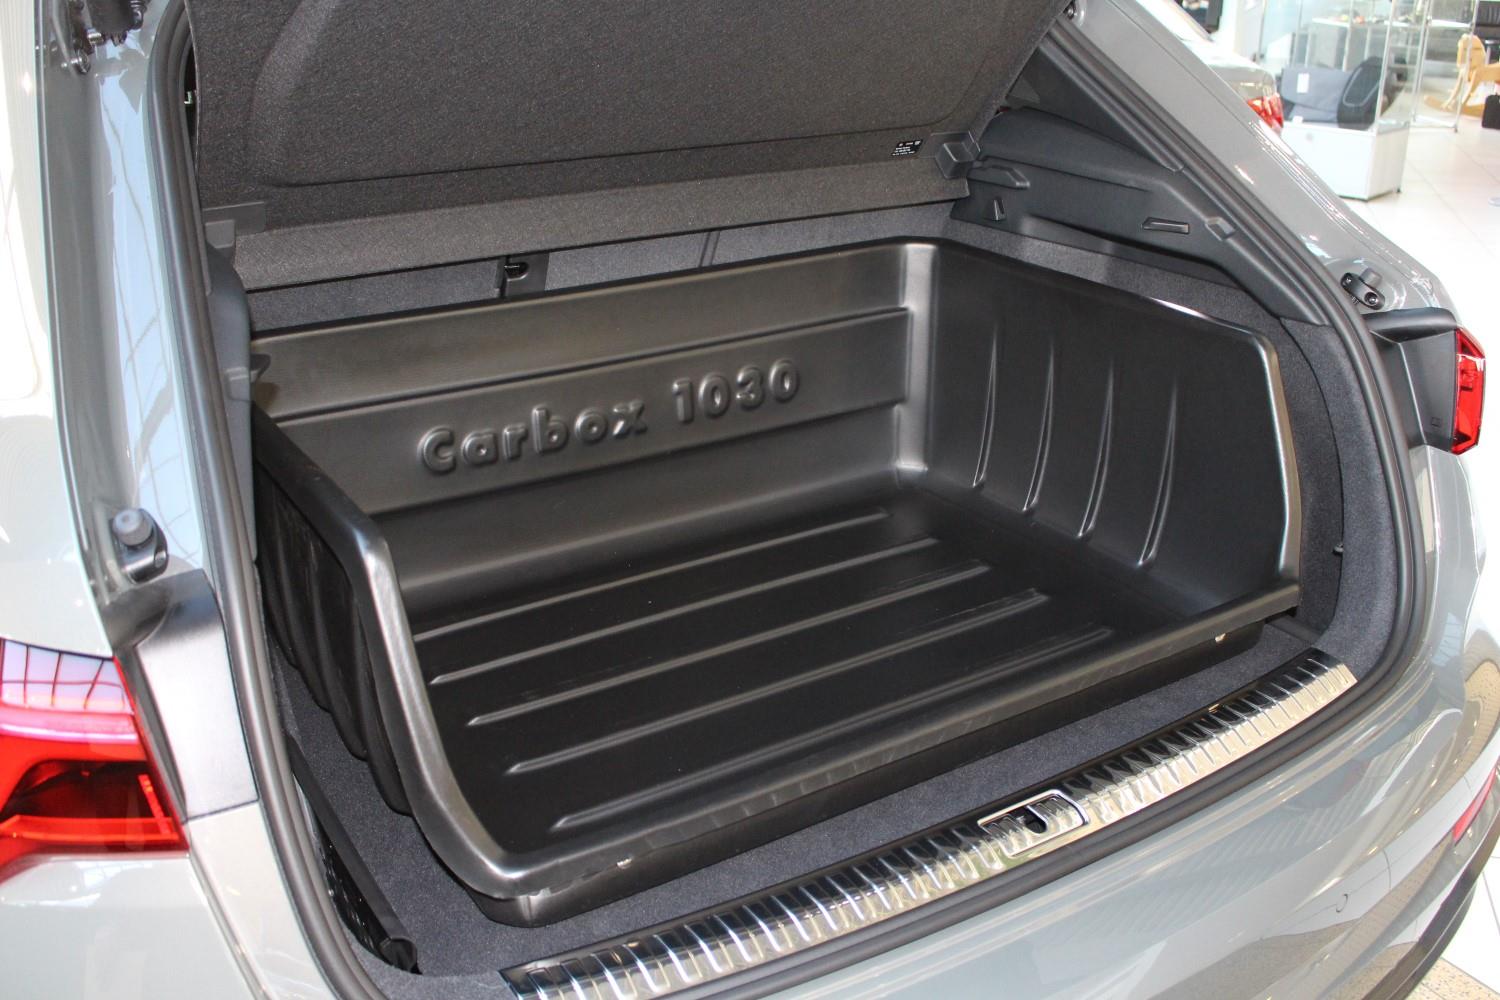 Kofferraumwanne für Audi Q3: Der Kofferraumschutz, der überzeugt.